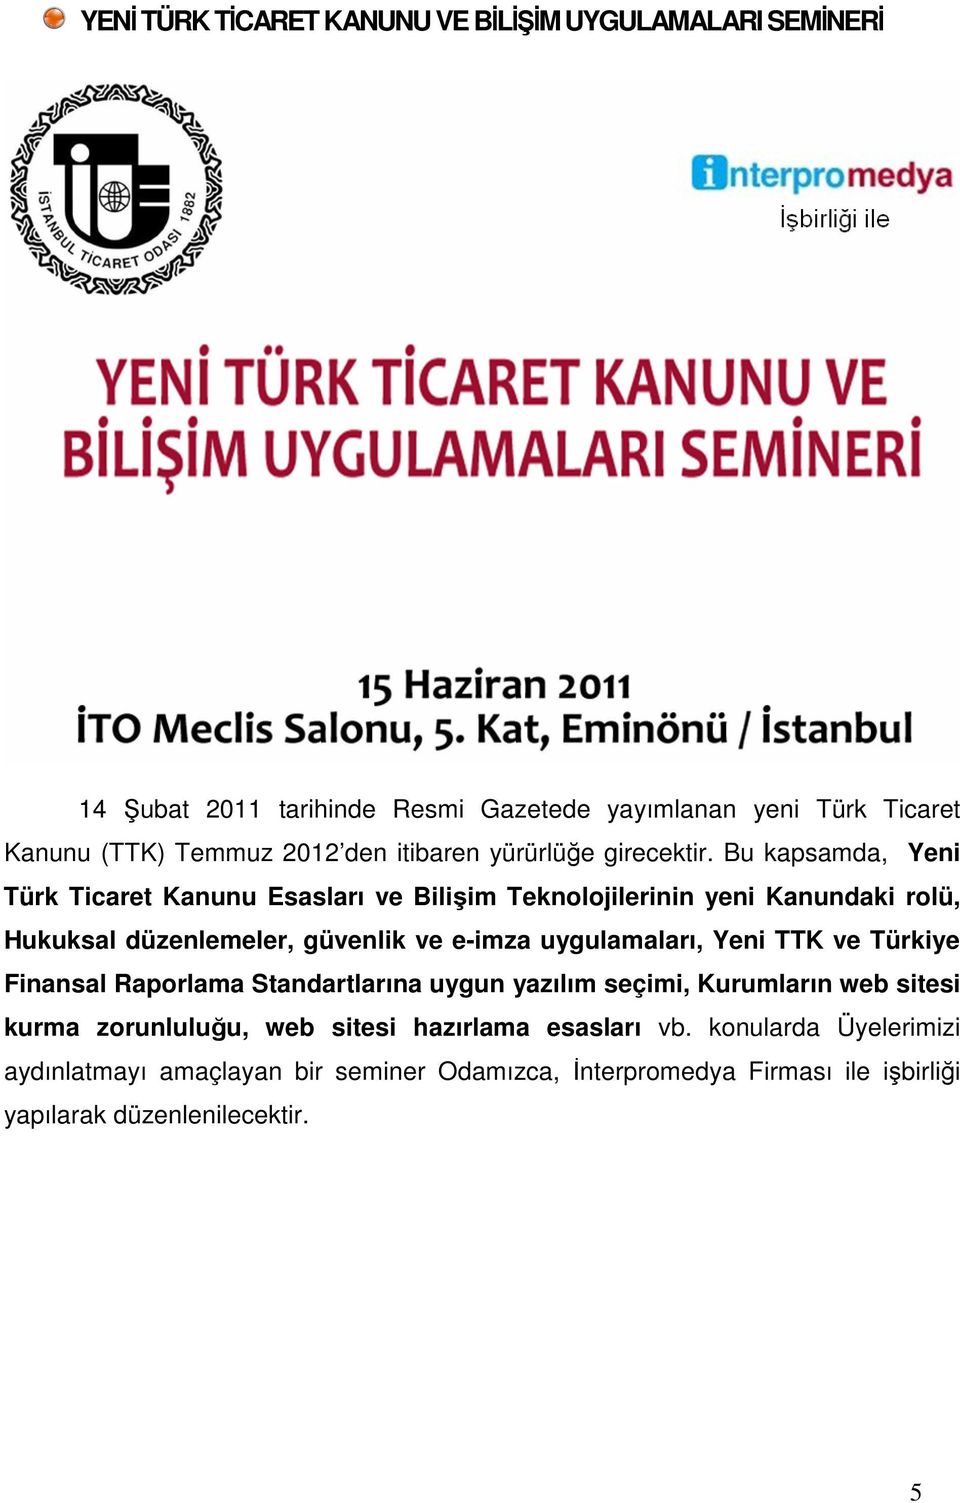 Bu kapsamda, Yeni Türk Ticaret Kanunu Esasları ve Bilişim Teknolojilerinin yeni Kanundaki rolü, Hukuksal düzenlemeler, güvenlik ve e-imza uygulamaları,